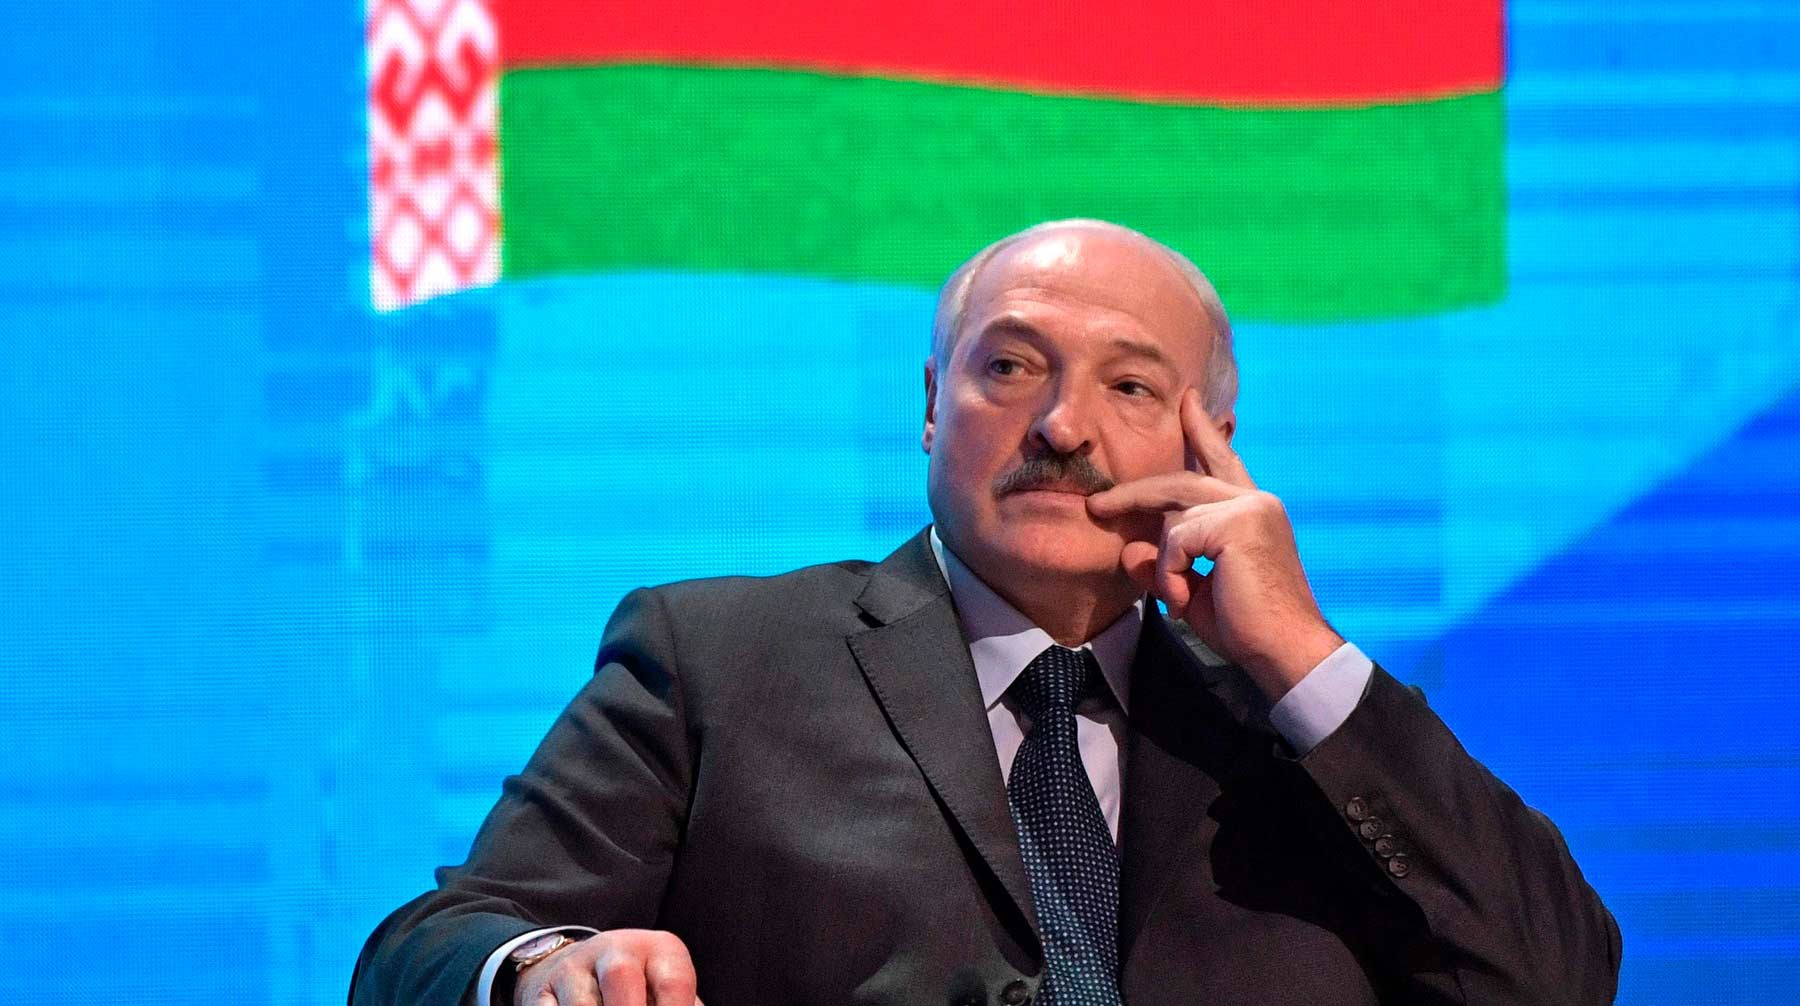 Dailystorm - «Все смотрят, за что бы укусить»: Лукашенко пригрозил блогерам из России в связи с COVID-19